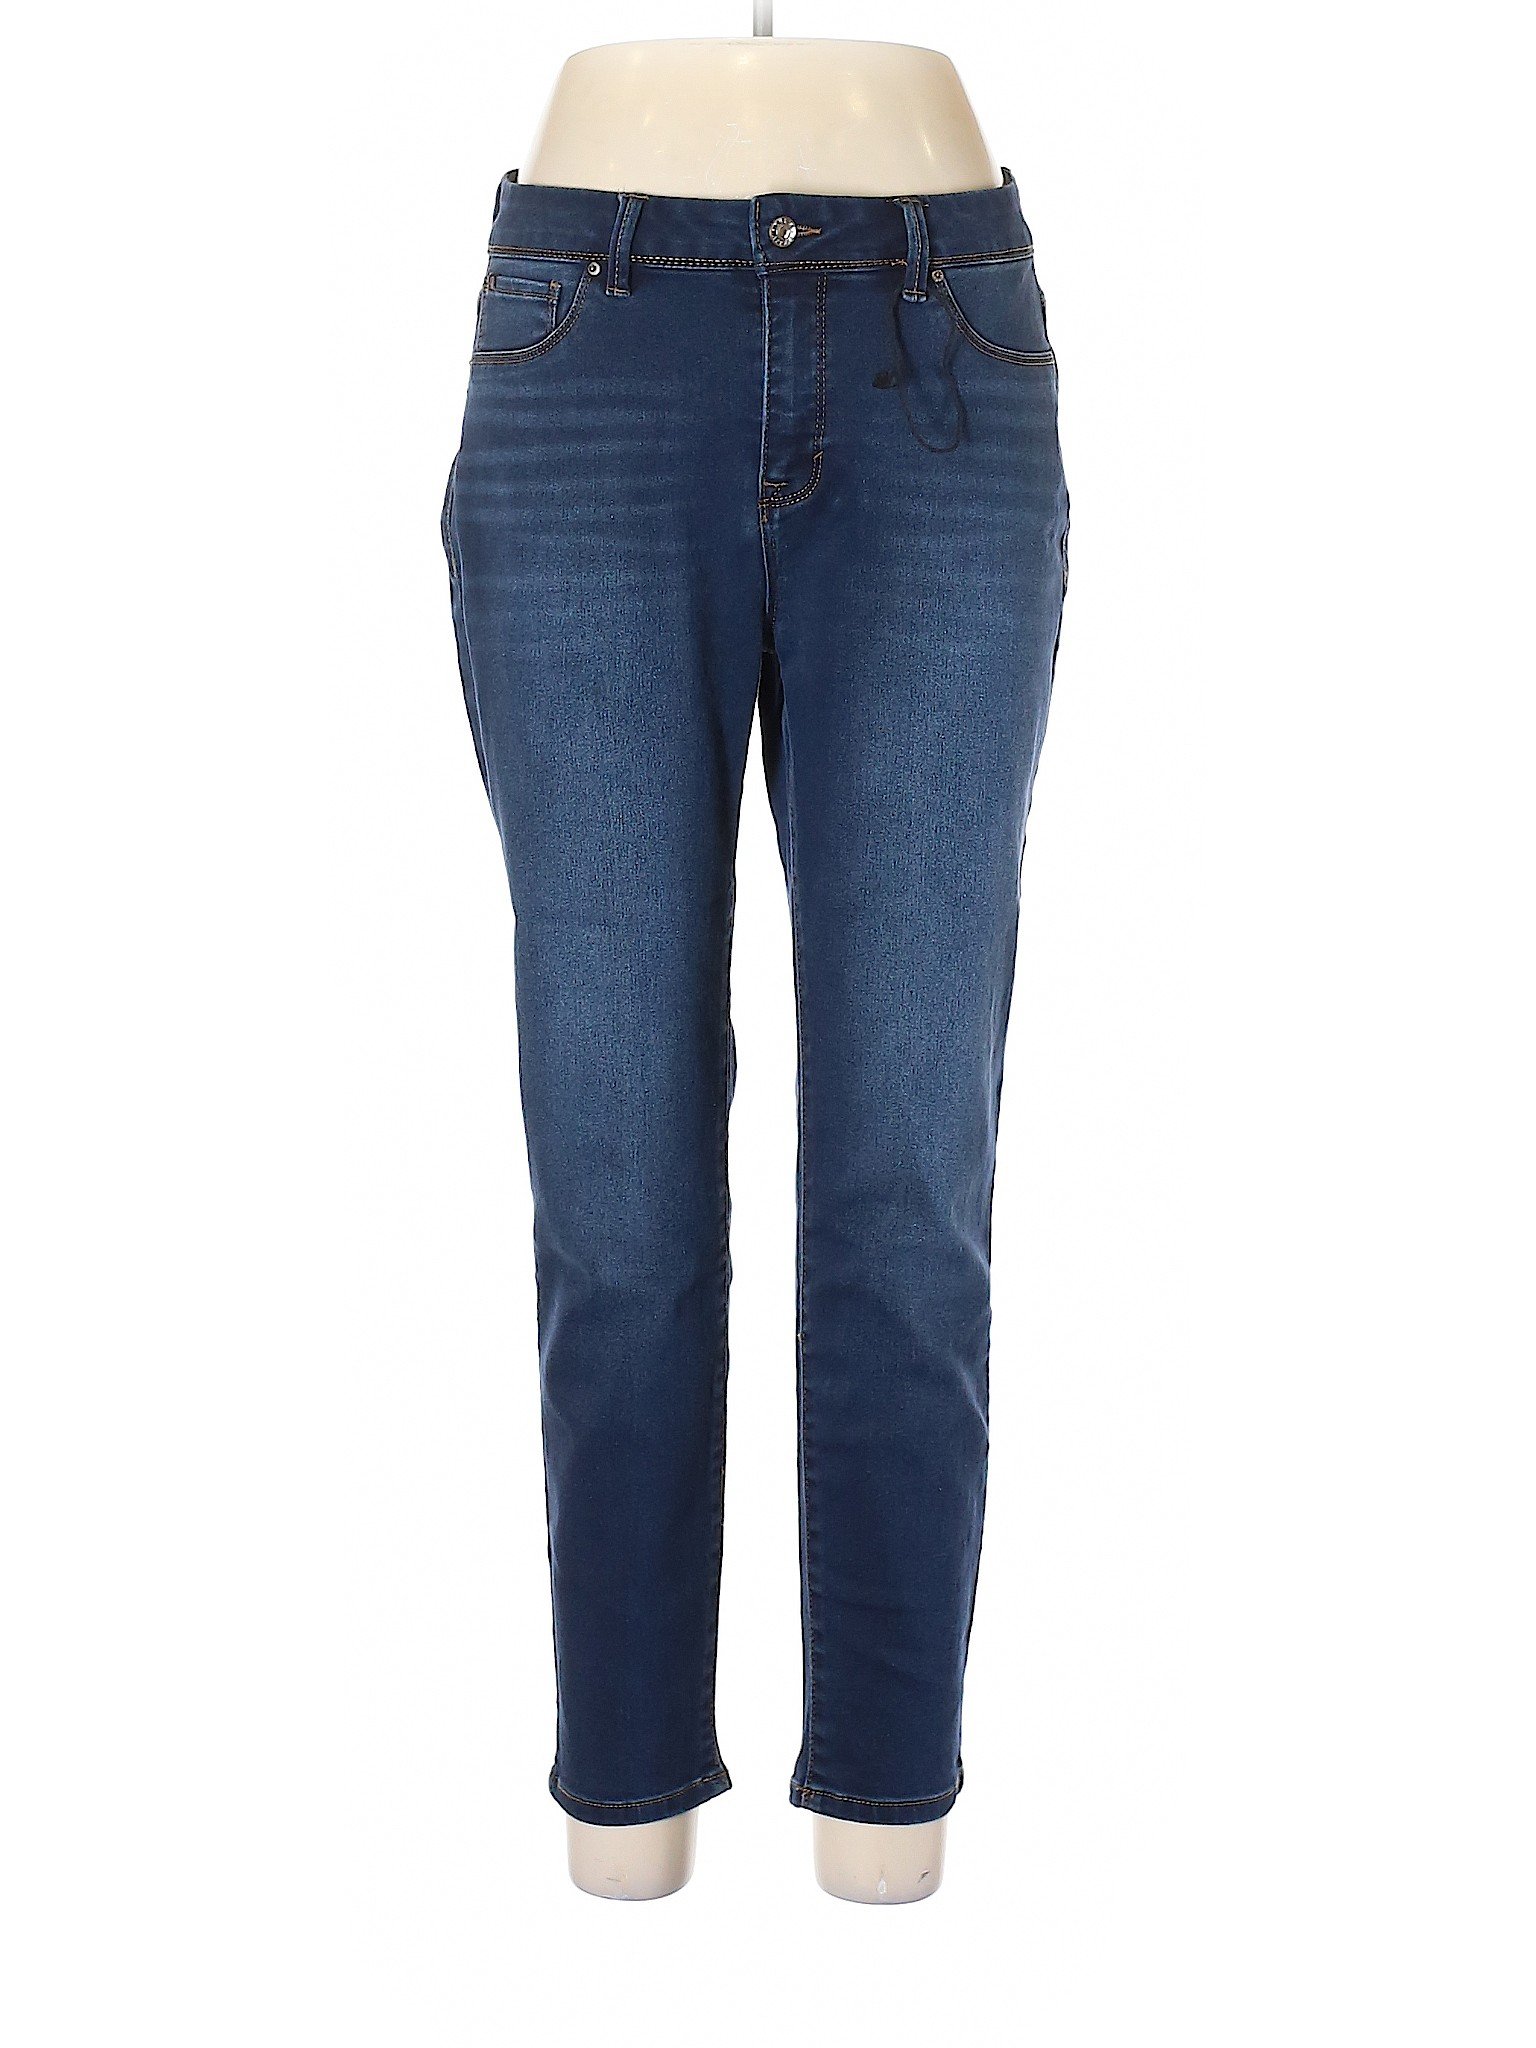 Curve Appeal Women Blue Jeans 12 | eBay